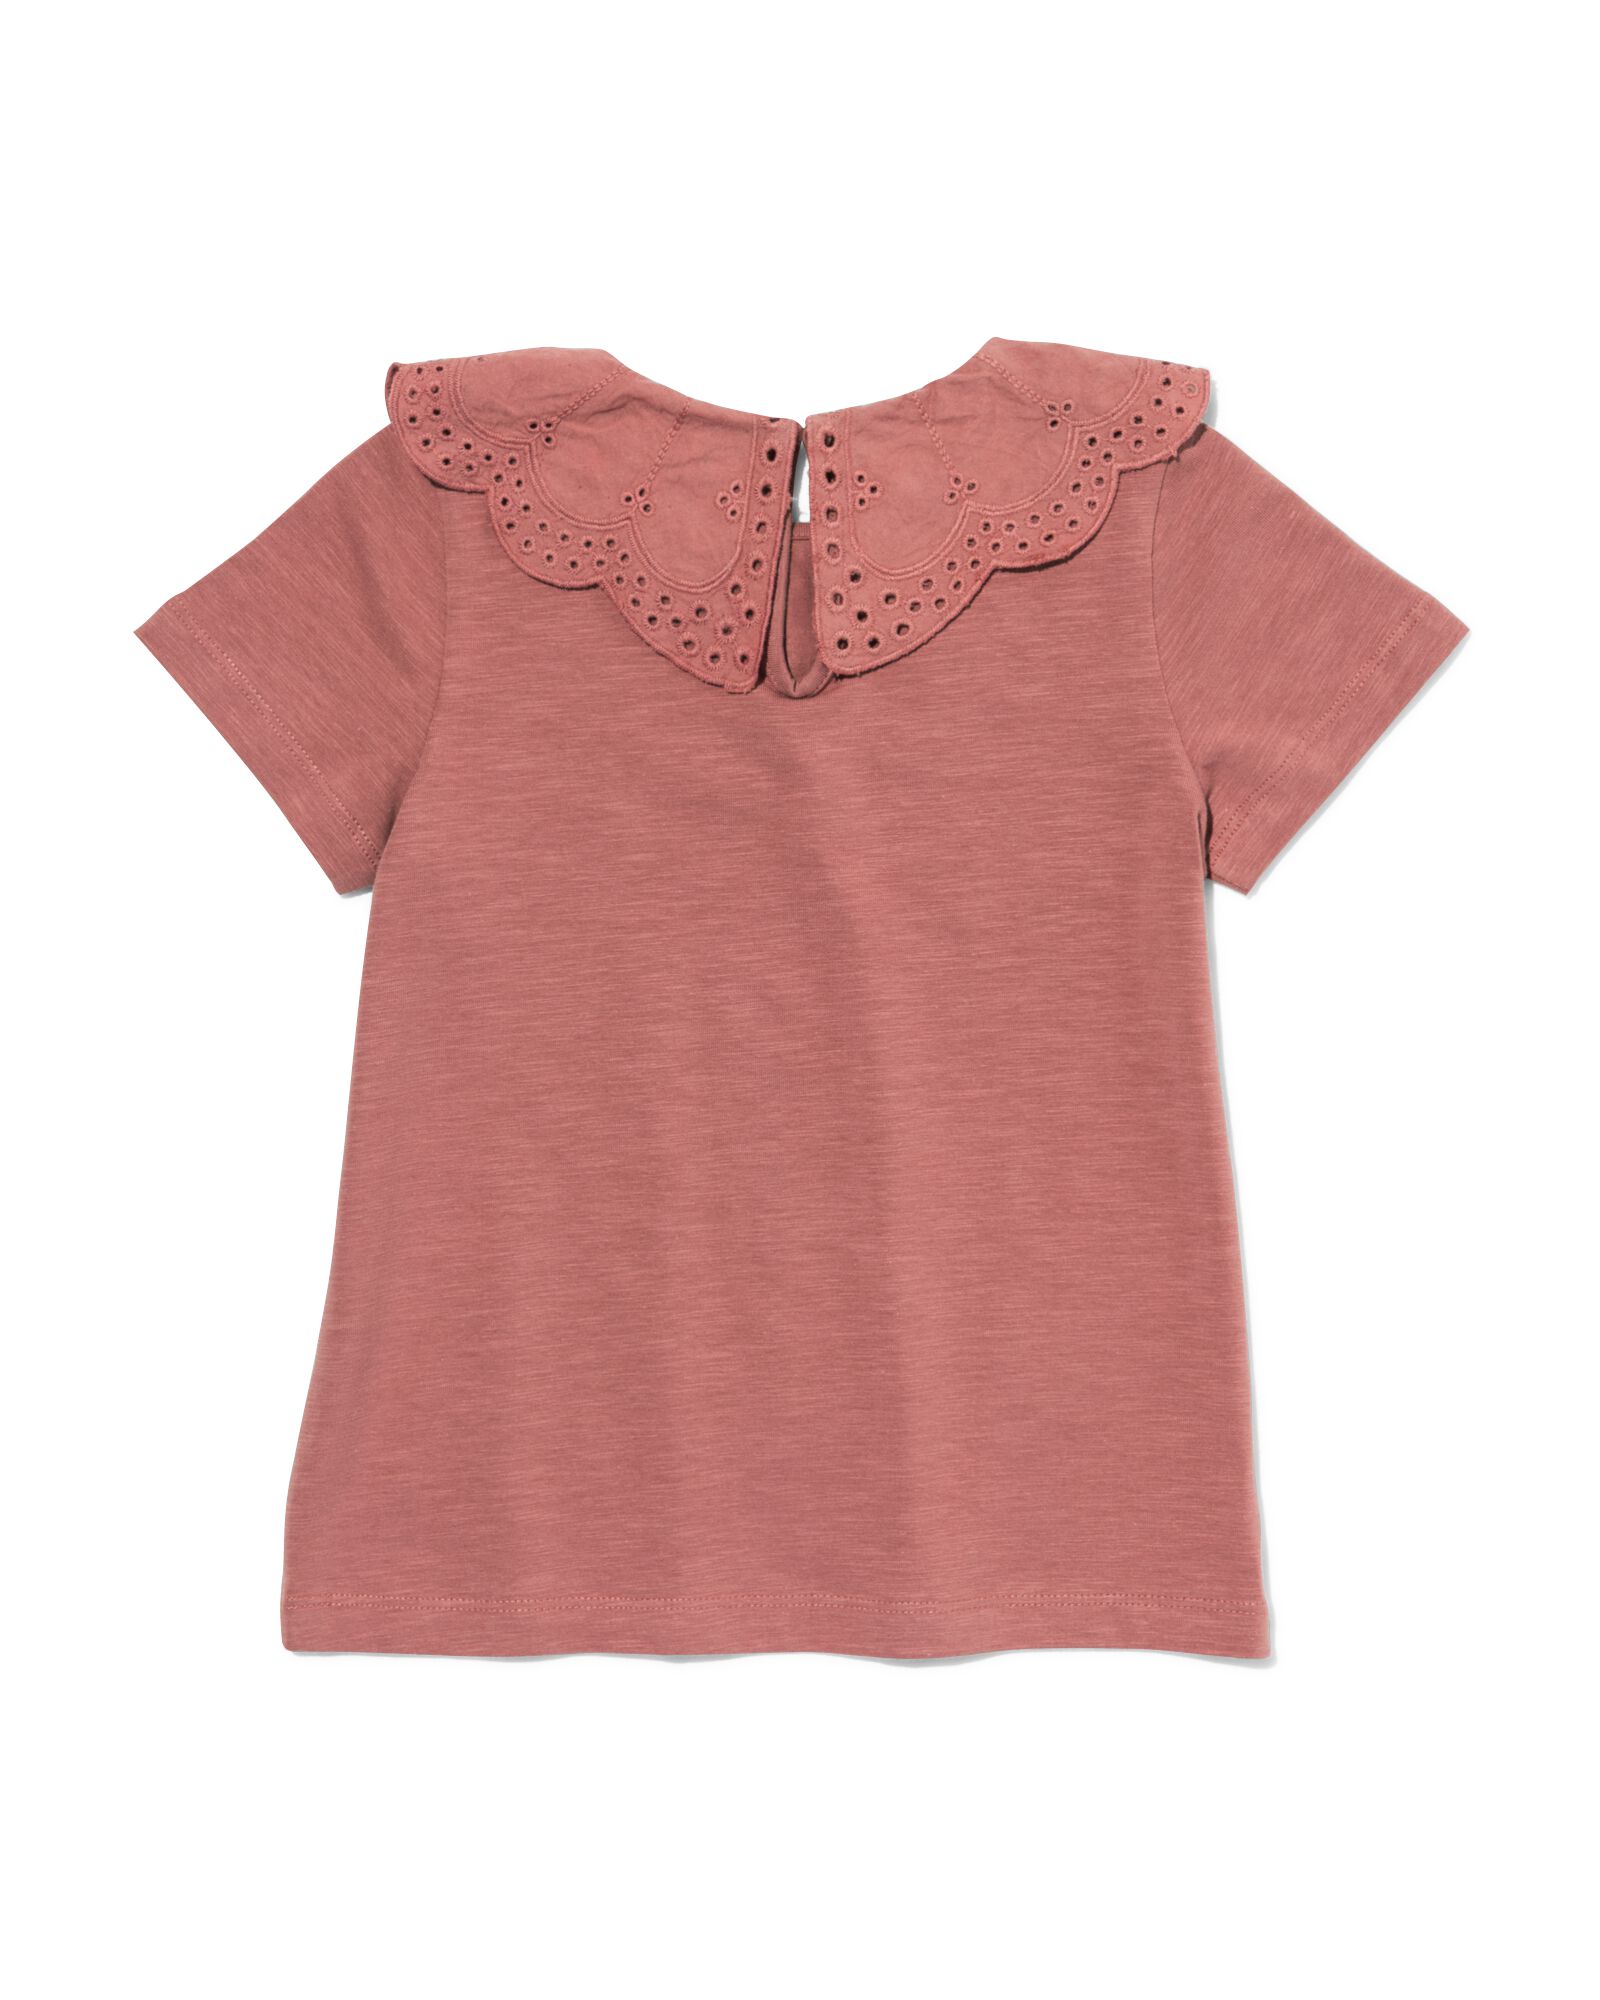 t-shirt enfant avec col en broderie roze 98/104 - 30874048 - HEMA